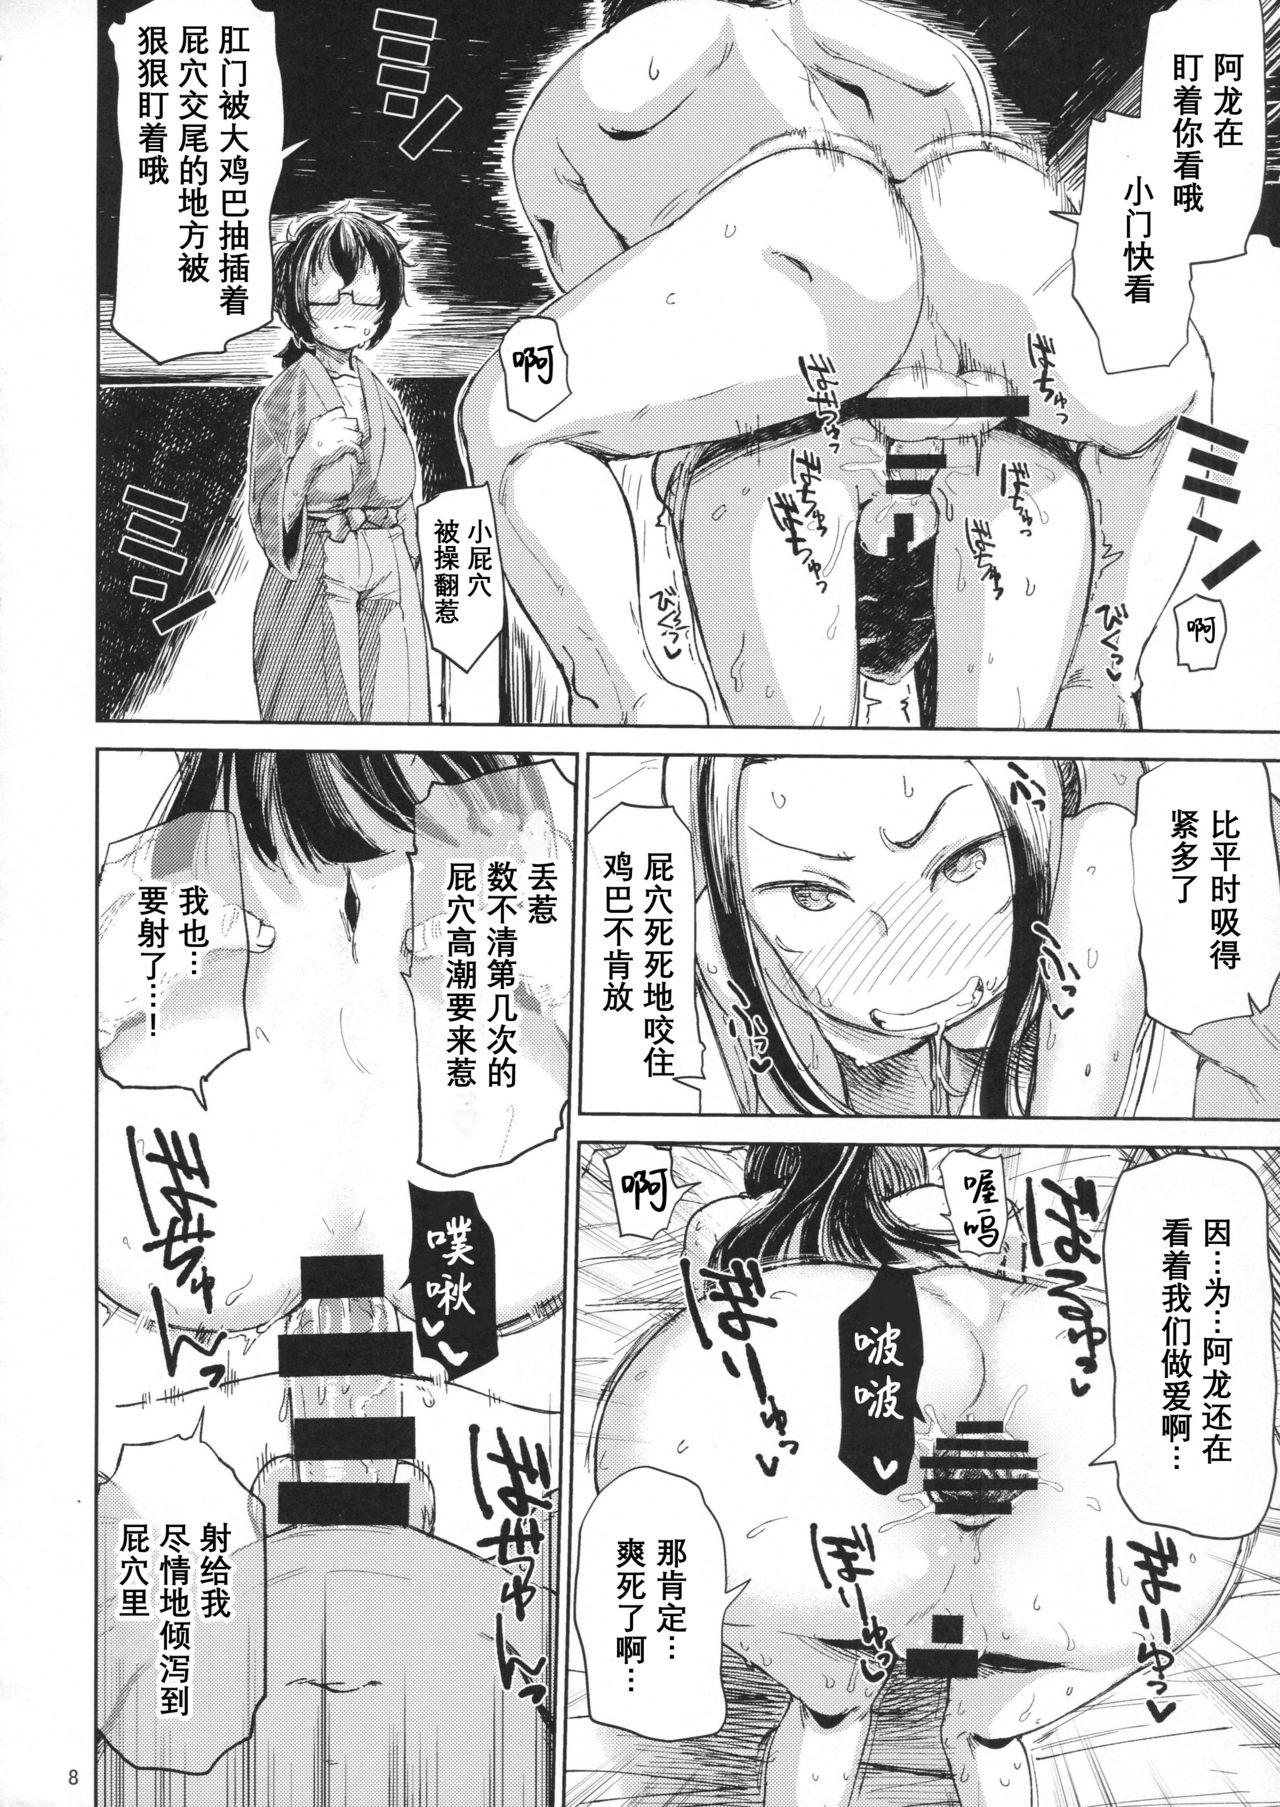 18yo (C92) [Nikutai Gengo Club (Dekosuke)] Natsu no Hi Monza Sono Ni (Girls und Panzer)[Chinese]【不可视汉化】 - Girls und panzer Asshole - Page 8